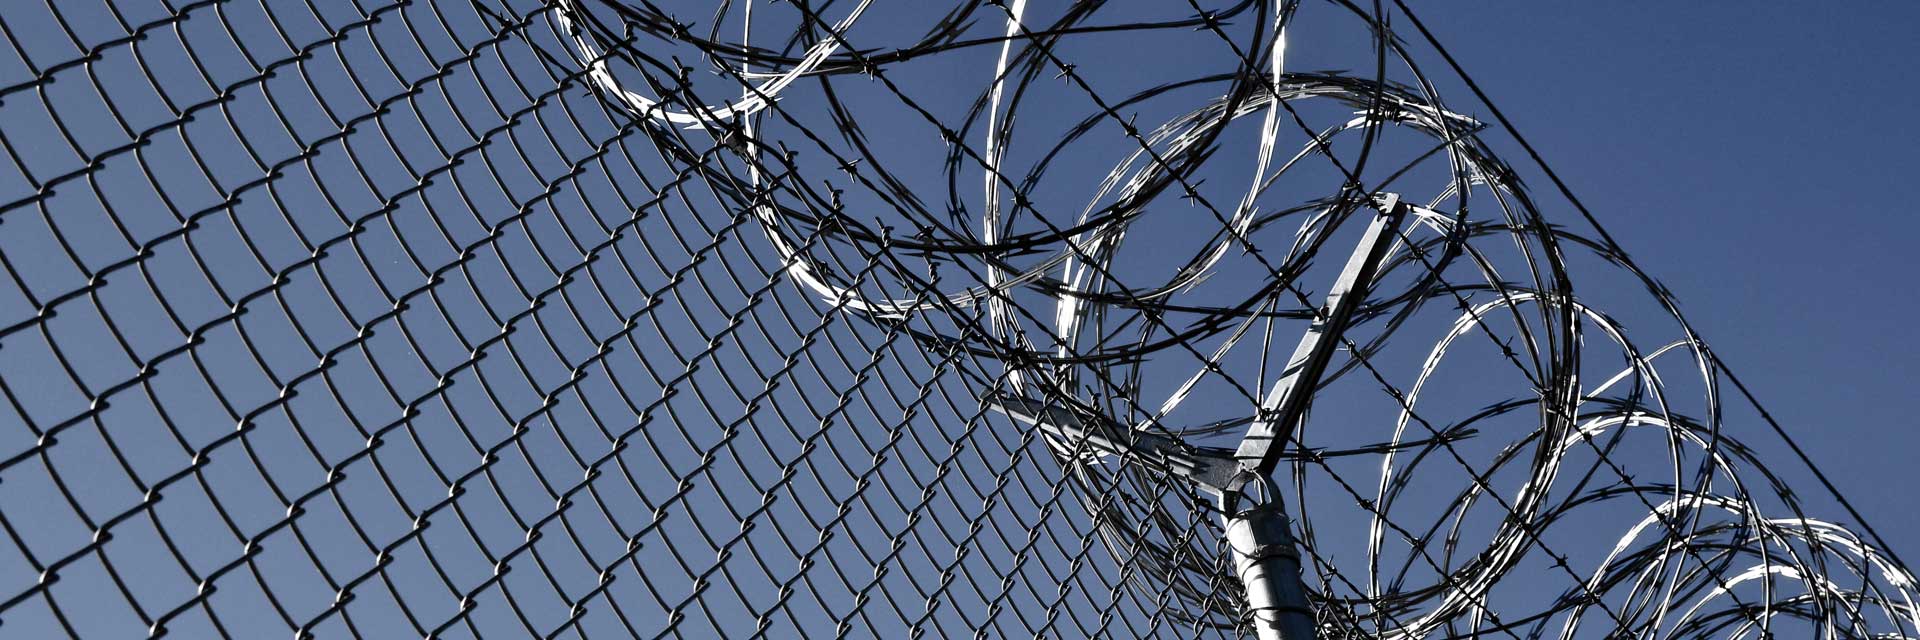 Prison razor wire fence